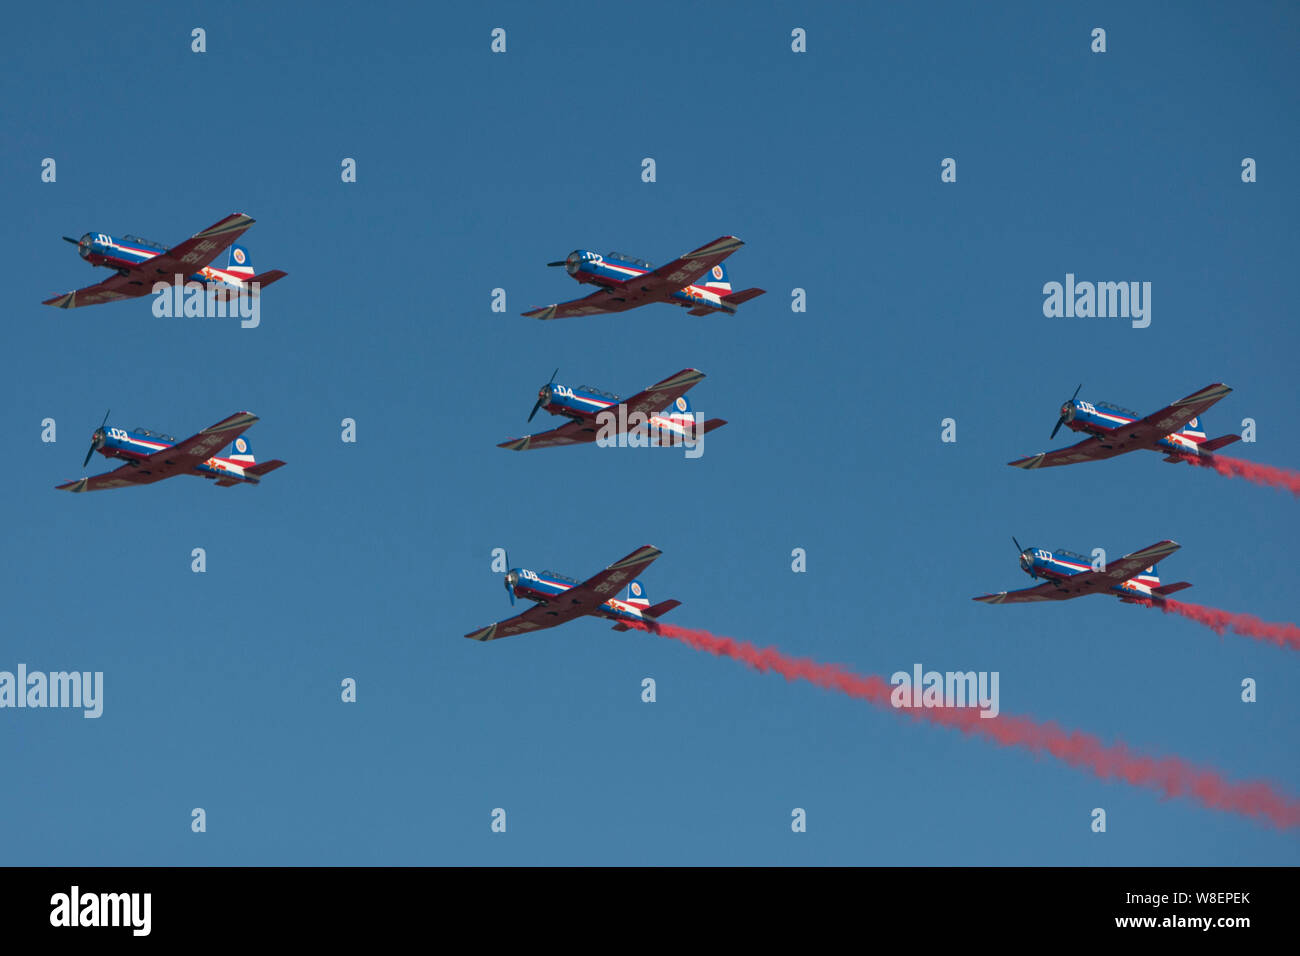 Aerei acrobatici immagini e fotografie stock ad alta risoluzione - Alamy